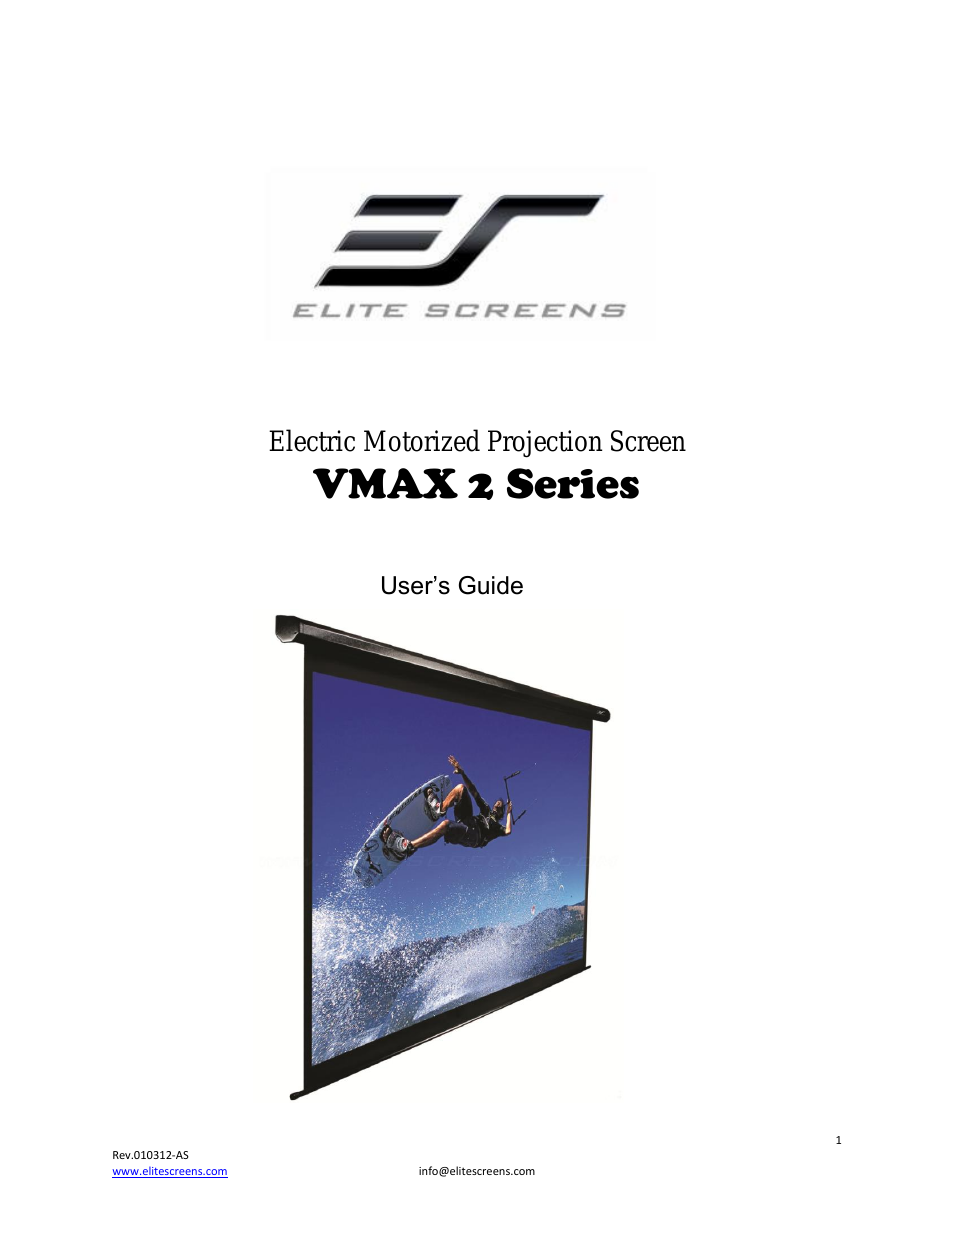 VMAX2 Series